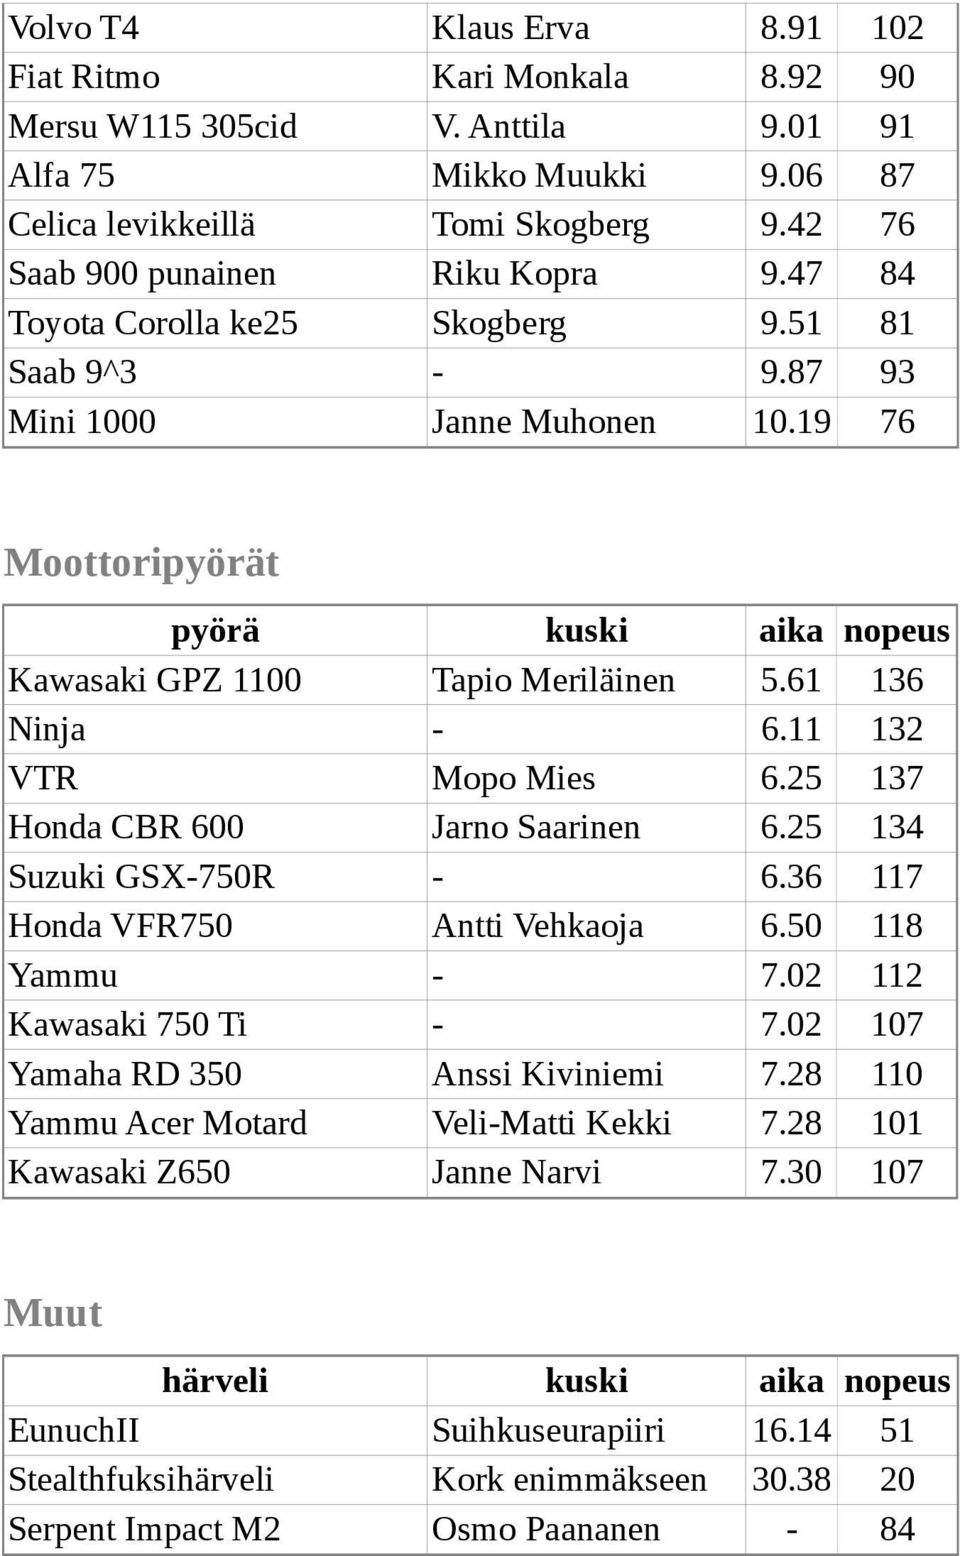 11 132 VTR Mopo Mies 6.25 137 Honda CBR 600 Jarno Saarinen 6.25 134 Suzuki GSX-750R - 6.36 117 Honda VFR750 Antti Vehkaoja 6.50 118 Yammu - 7.02 112 Kawasaki 750 Ti - 7.